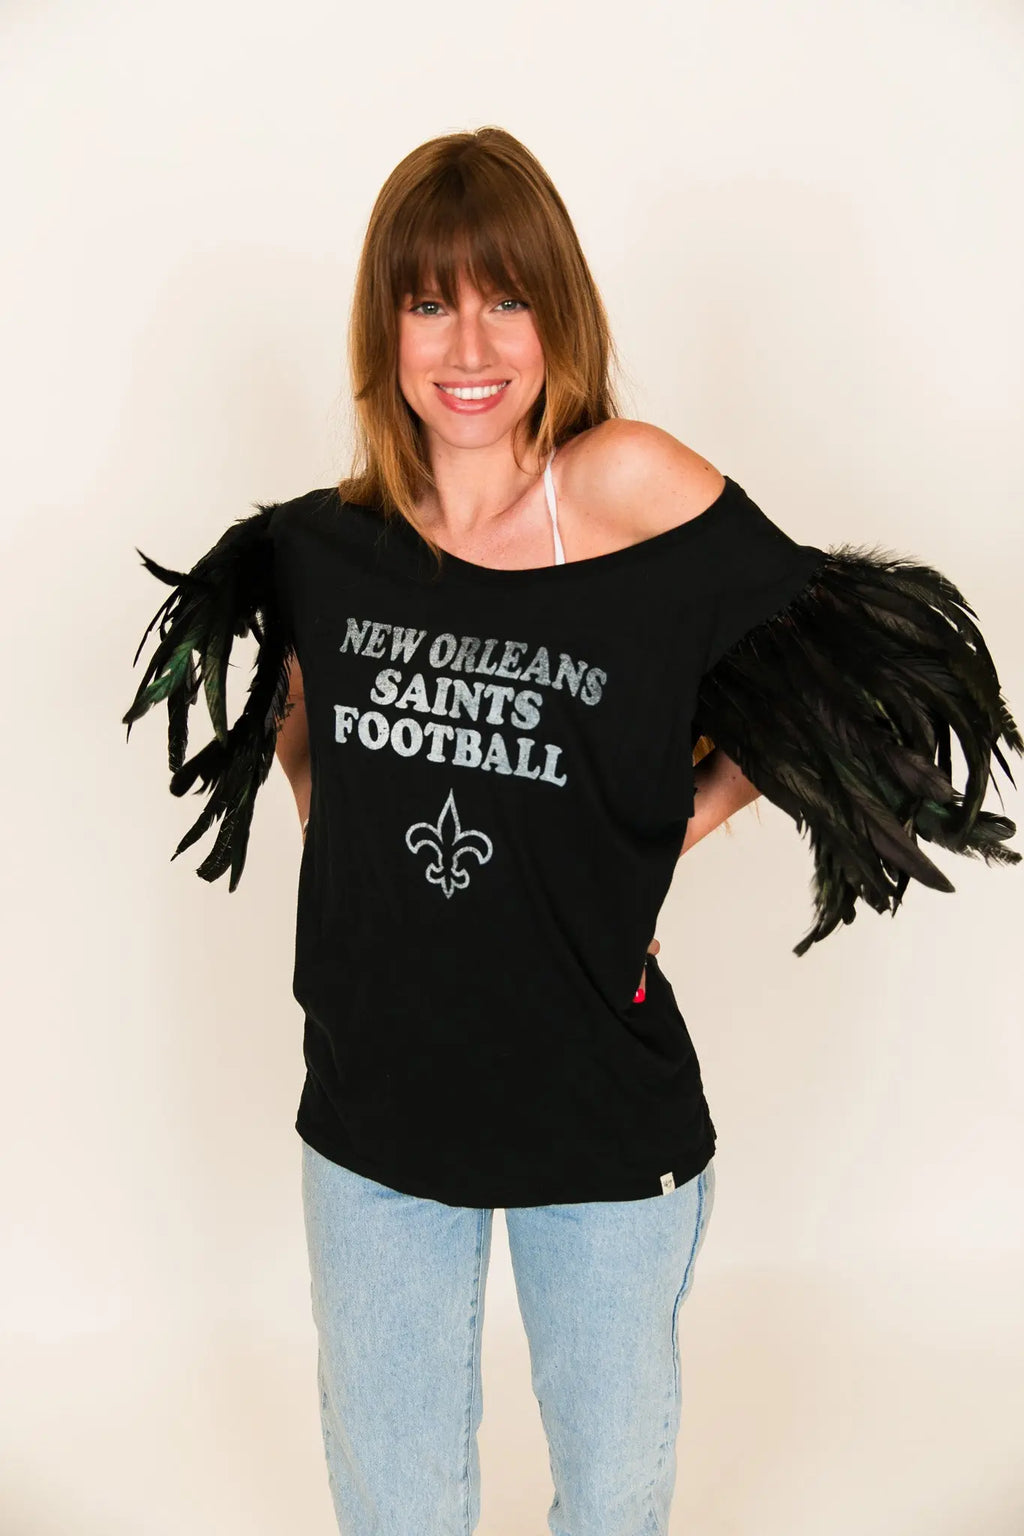 New Orleans Saints Glitter Jersey, Black Gold White Bling, Women Football  Shirt